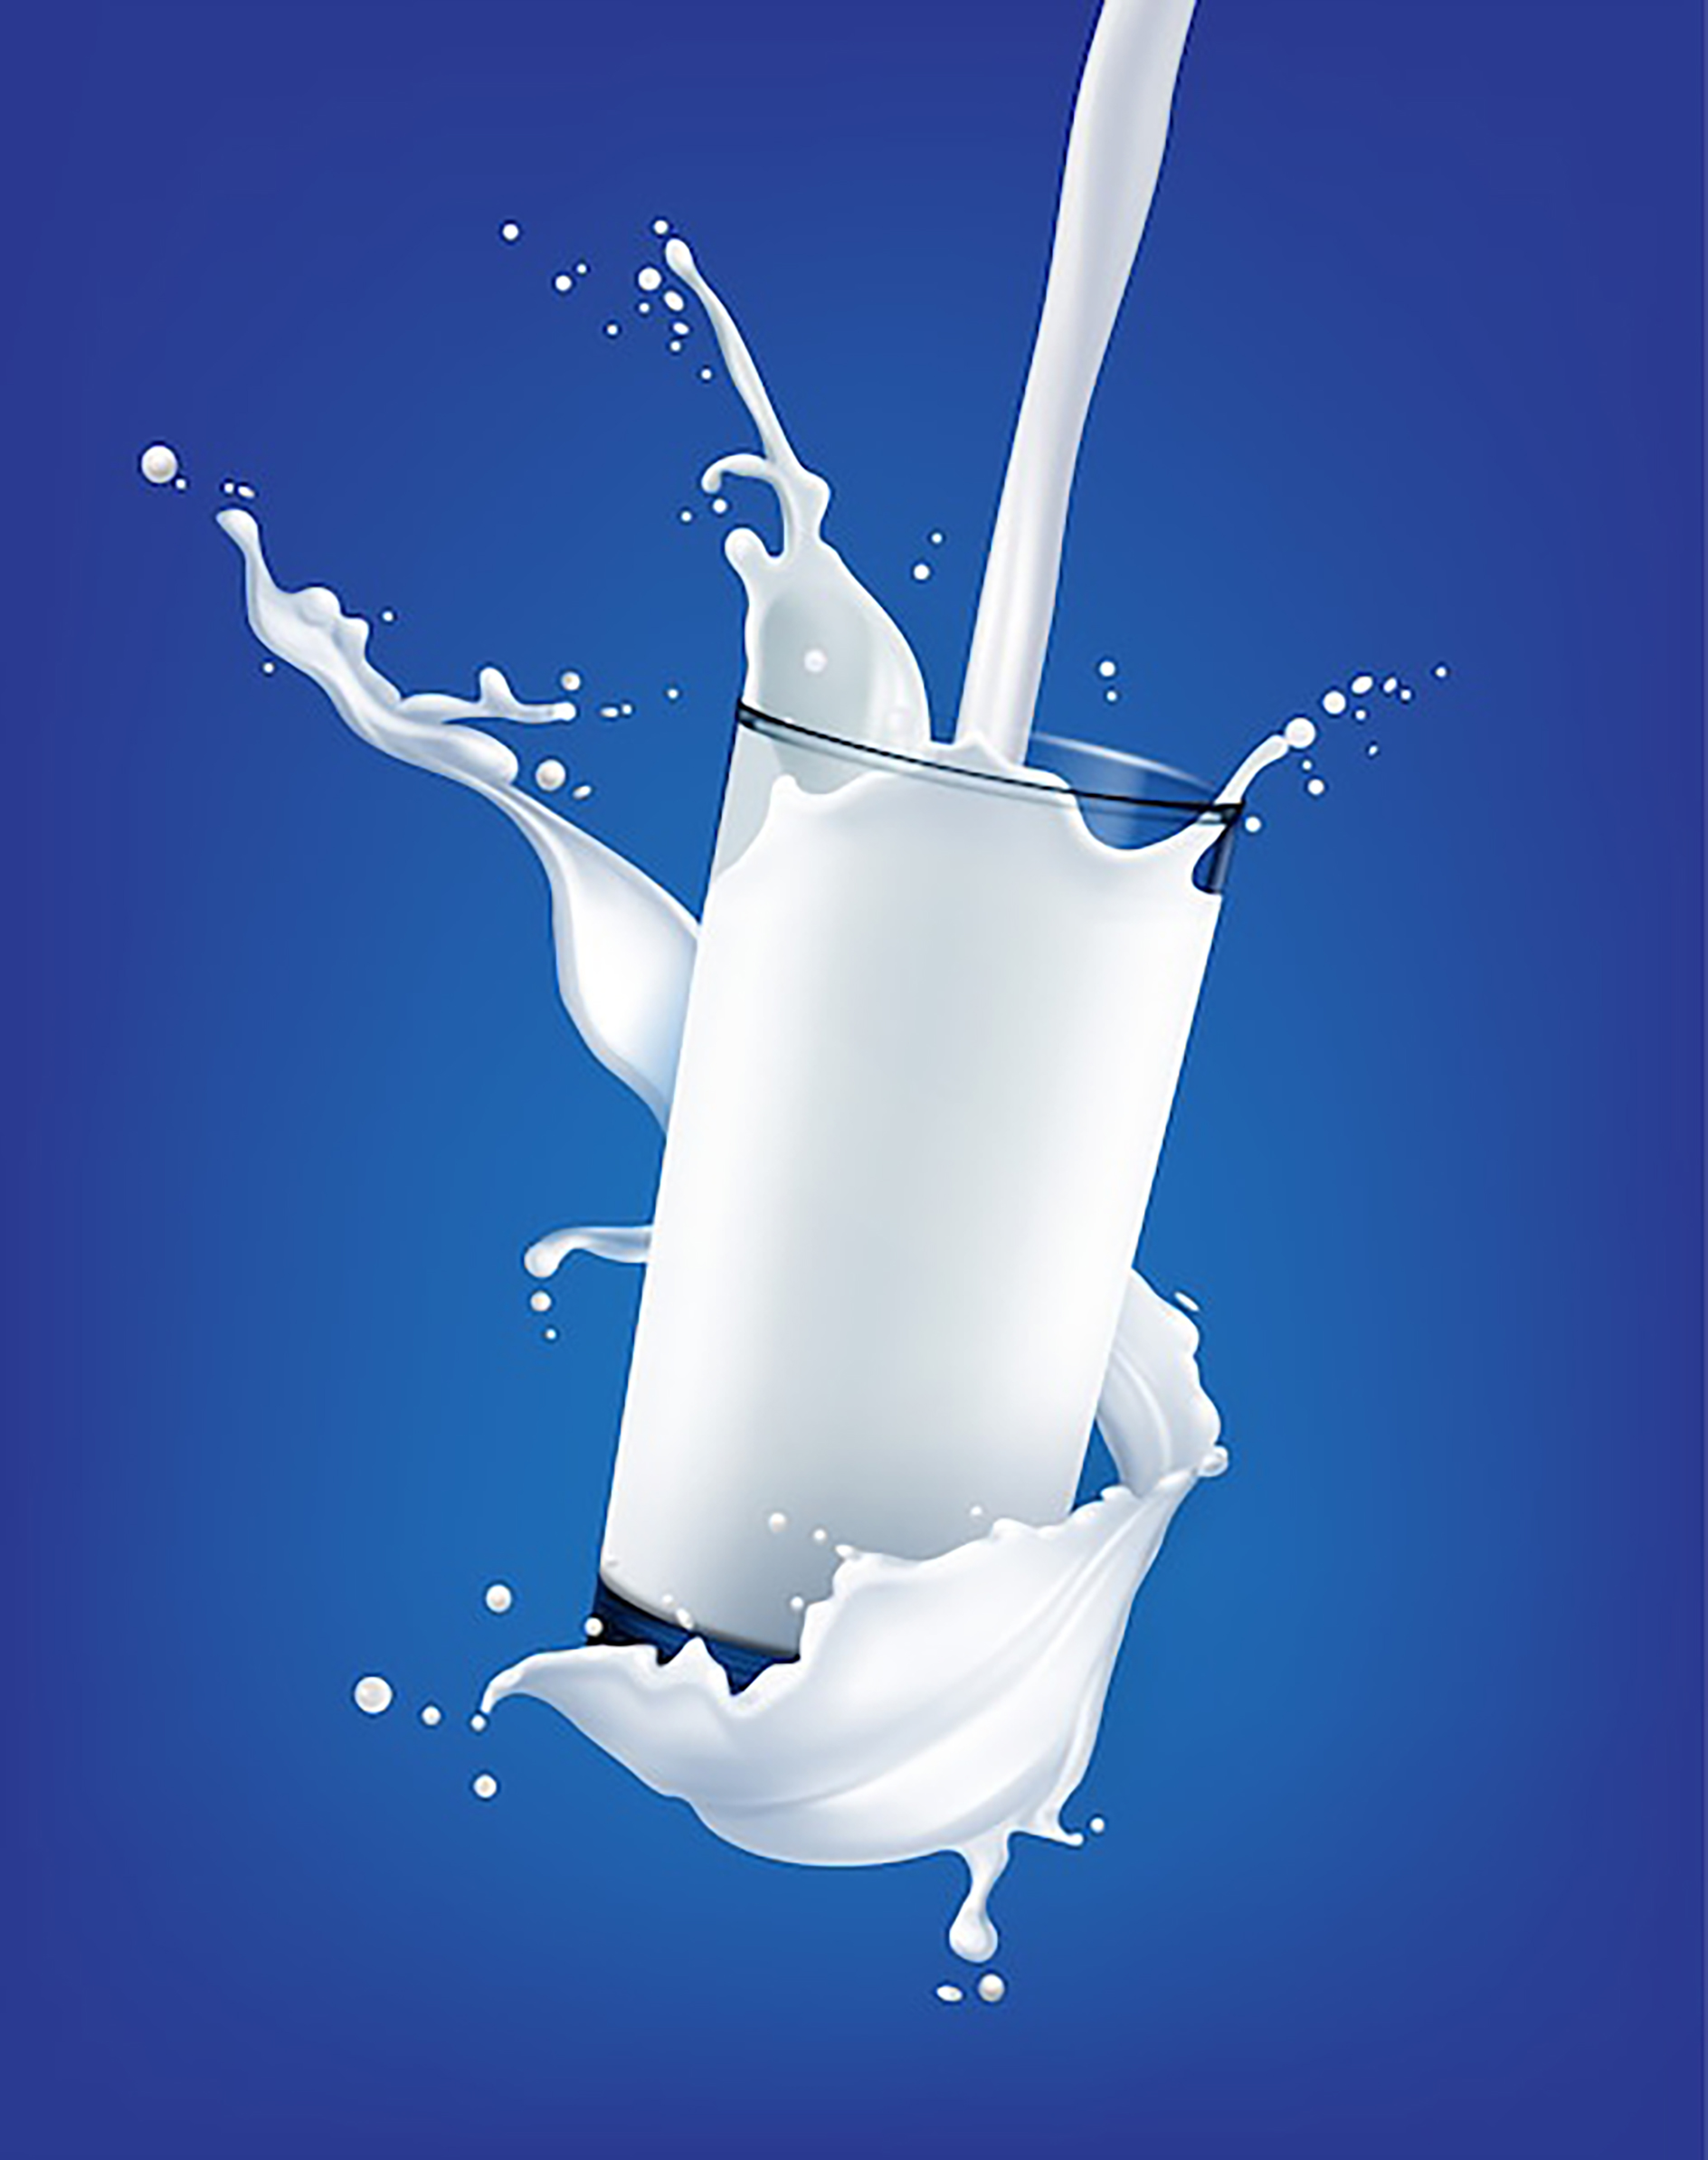 وکتور لیوان شیر به صورت تبلیغاتی در بکگراند آبی